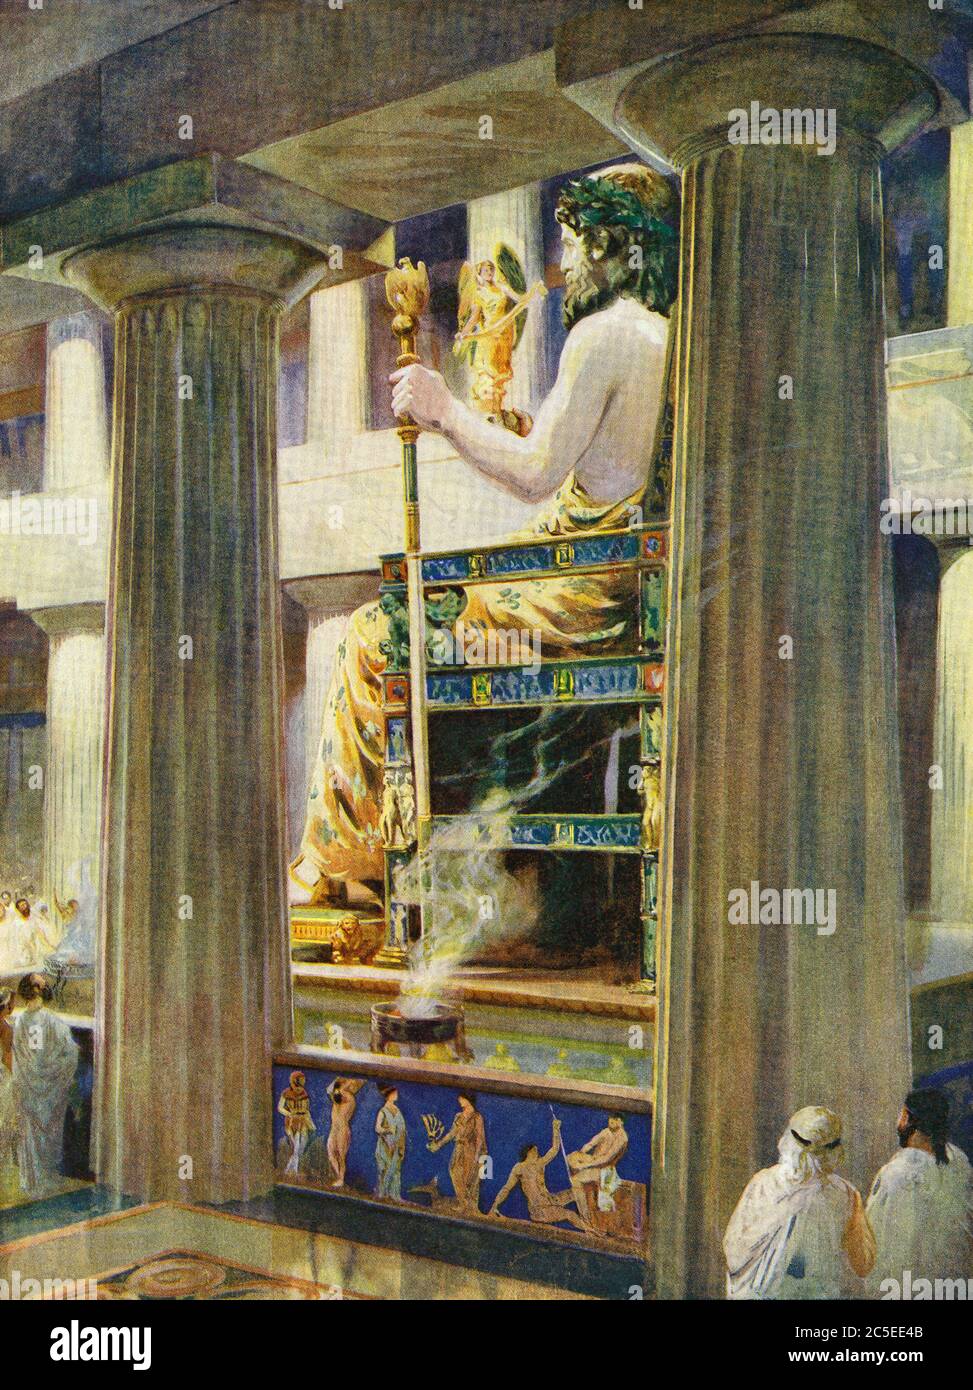 Statue des Zeus im Tempel des Zeus, Olympia im antiken Griechenland. Es wurde von dem griechischen Bildhauer Phidias um 435 v. Chr. gemacht und war eines der sieben Wunder der Antike. Nach einer Illustration von Charles M. Sheldon. Stockfoto